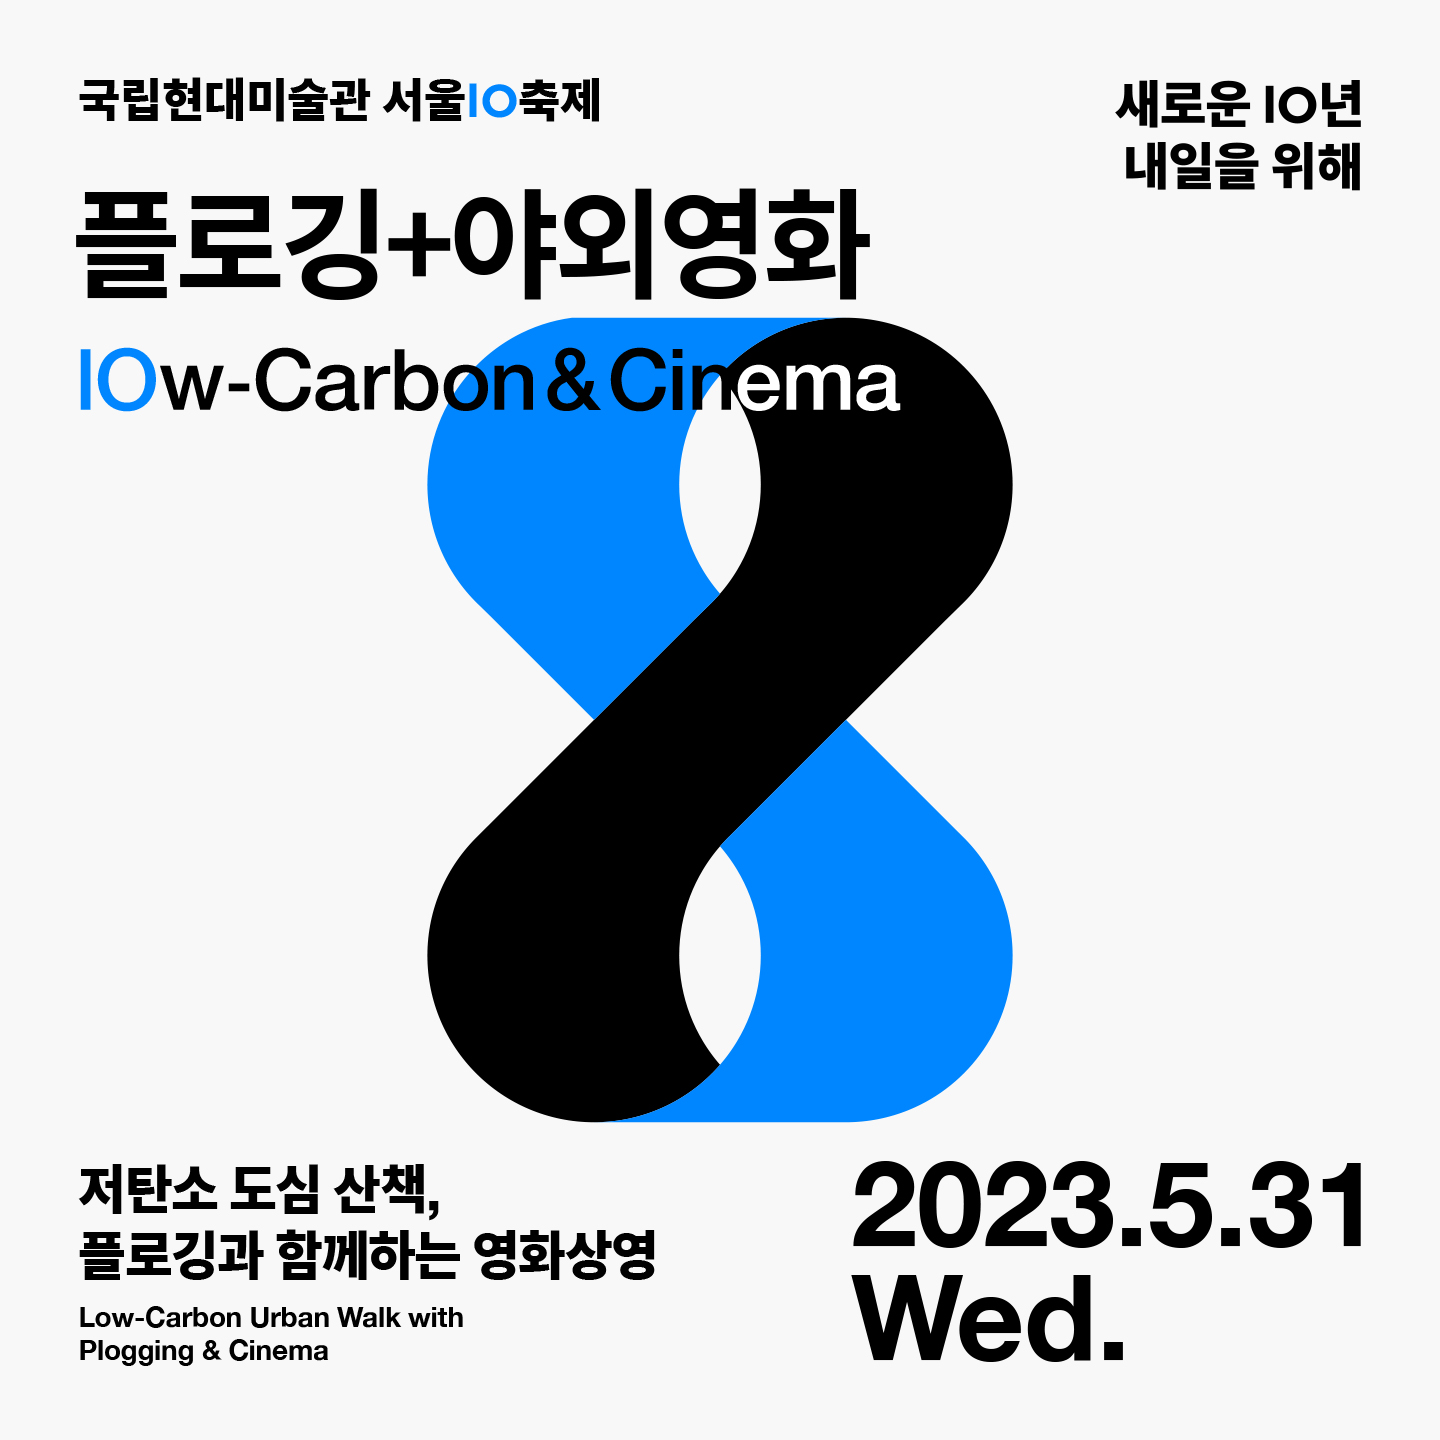 국립현대미술관 서울관10 축제: 플로깅+야외영화